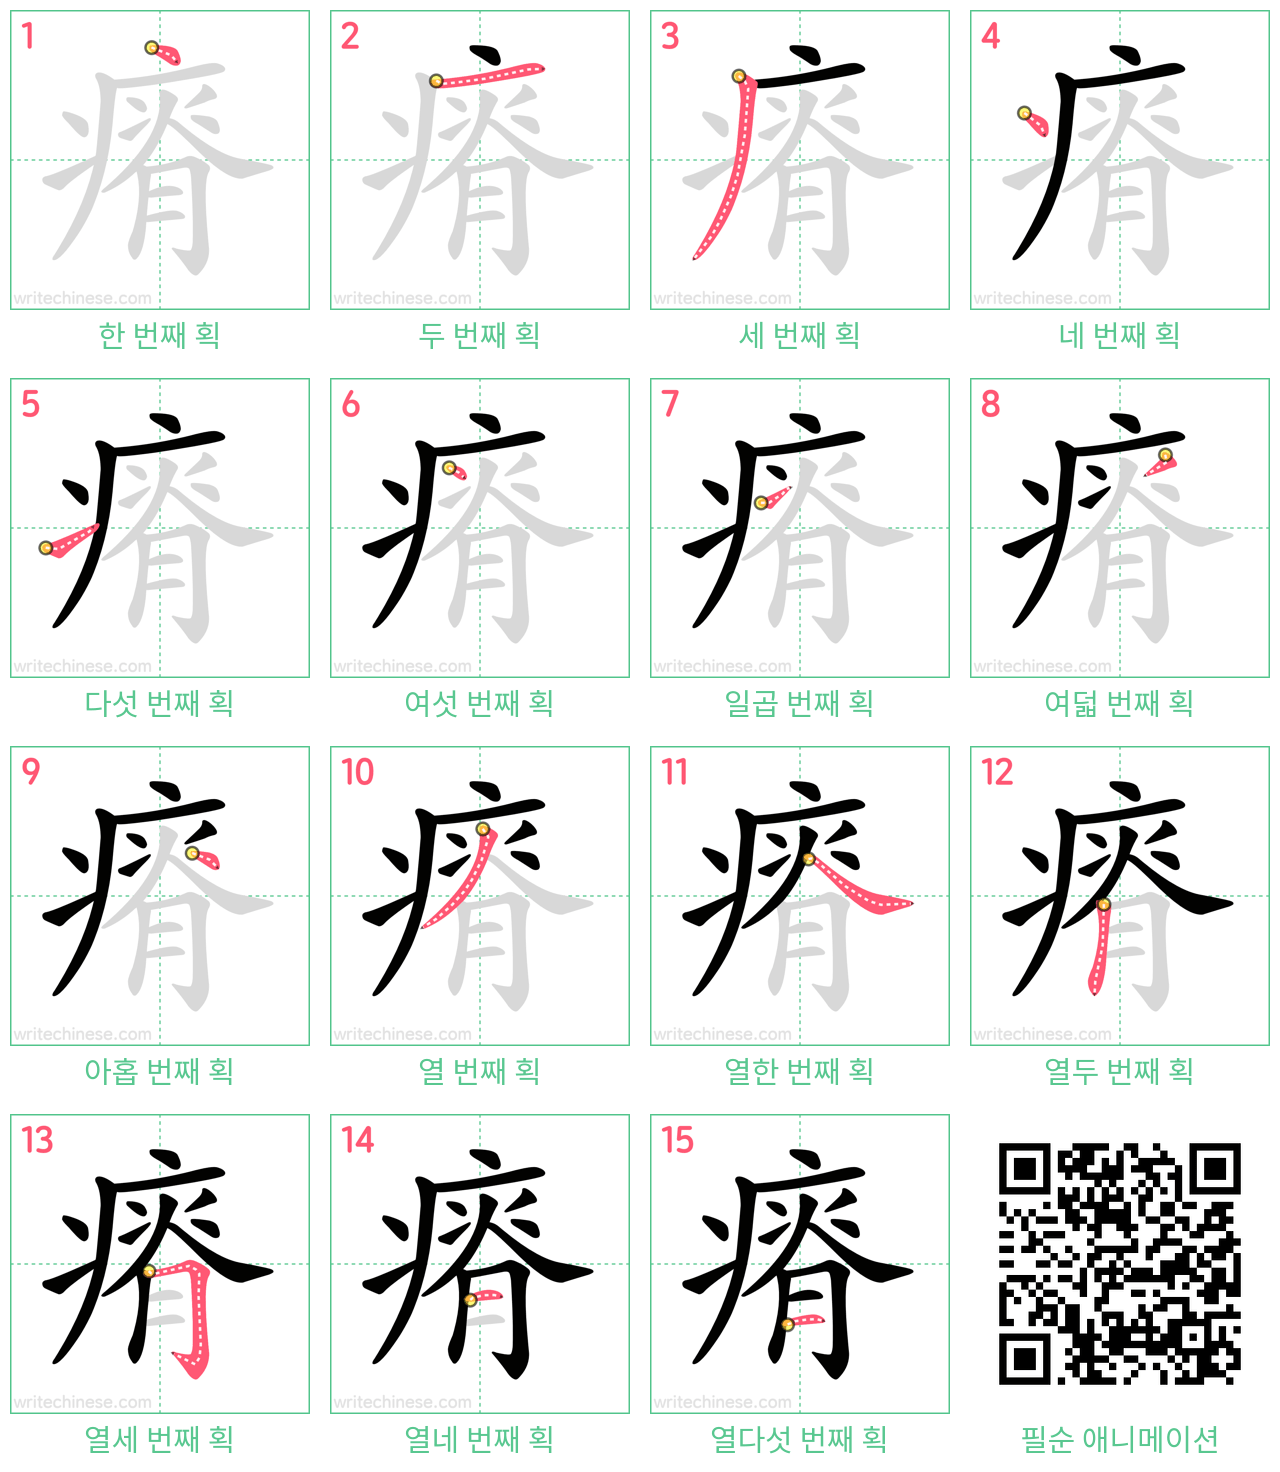 瘠 step-by-step stroke order diagrams